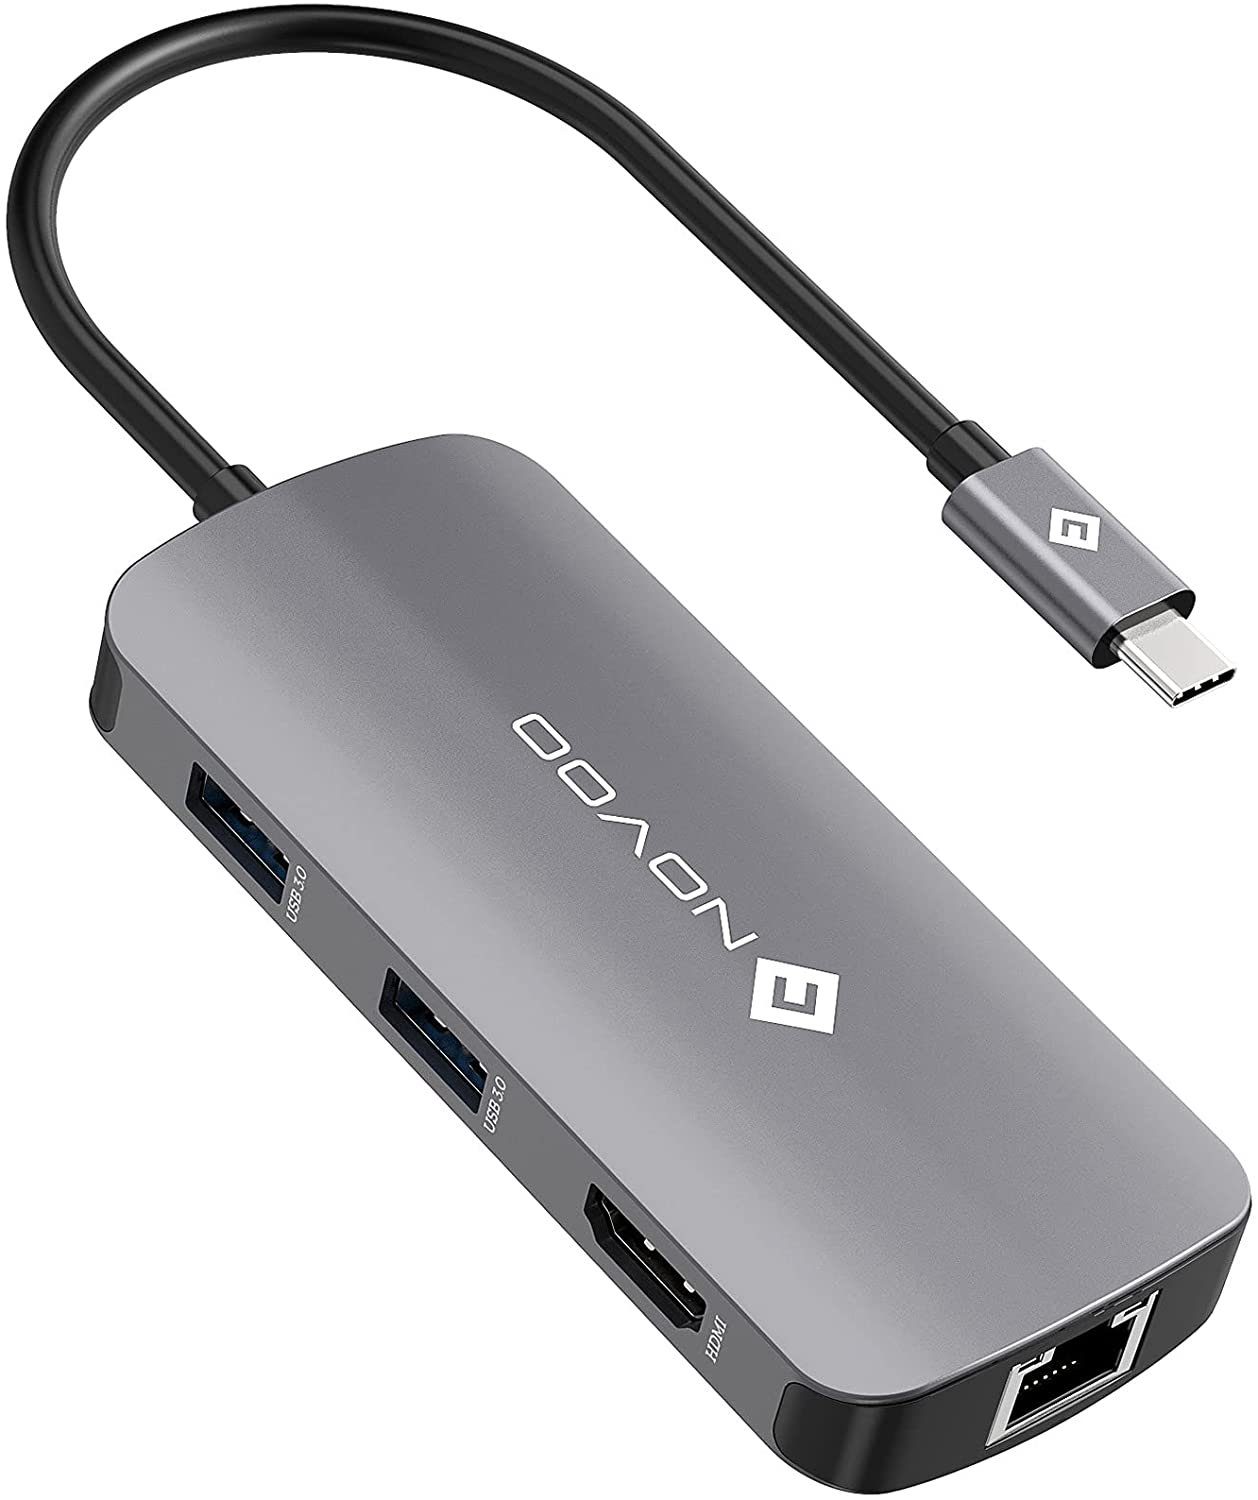 NOVOO 7 in 1 Adapter für technische Geräte, Anschlusserweiterung für den PC USB-Adapter USB-C zu HDMI, USB-C Power Delivery, 3xUSB 3.0, USB 2.0 Mini-B, RJ45, Kompatibel mit Windows Laptop, Tablet, MacBook & Ipad